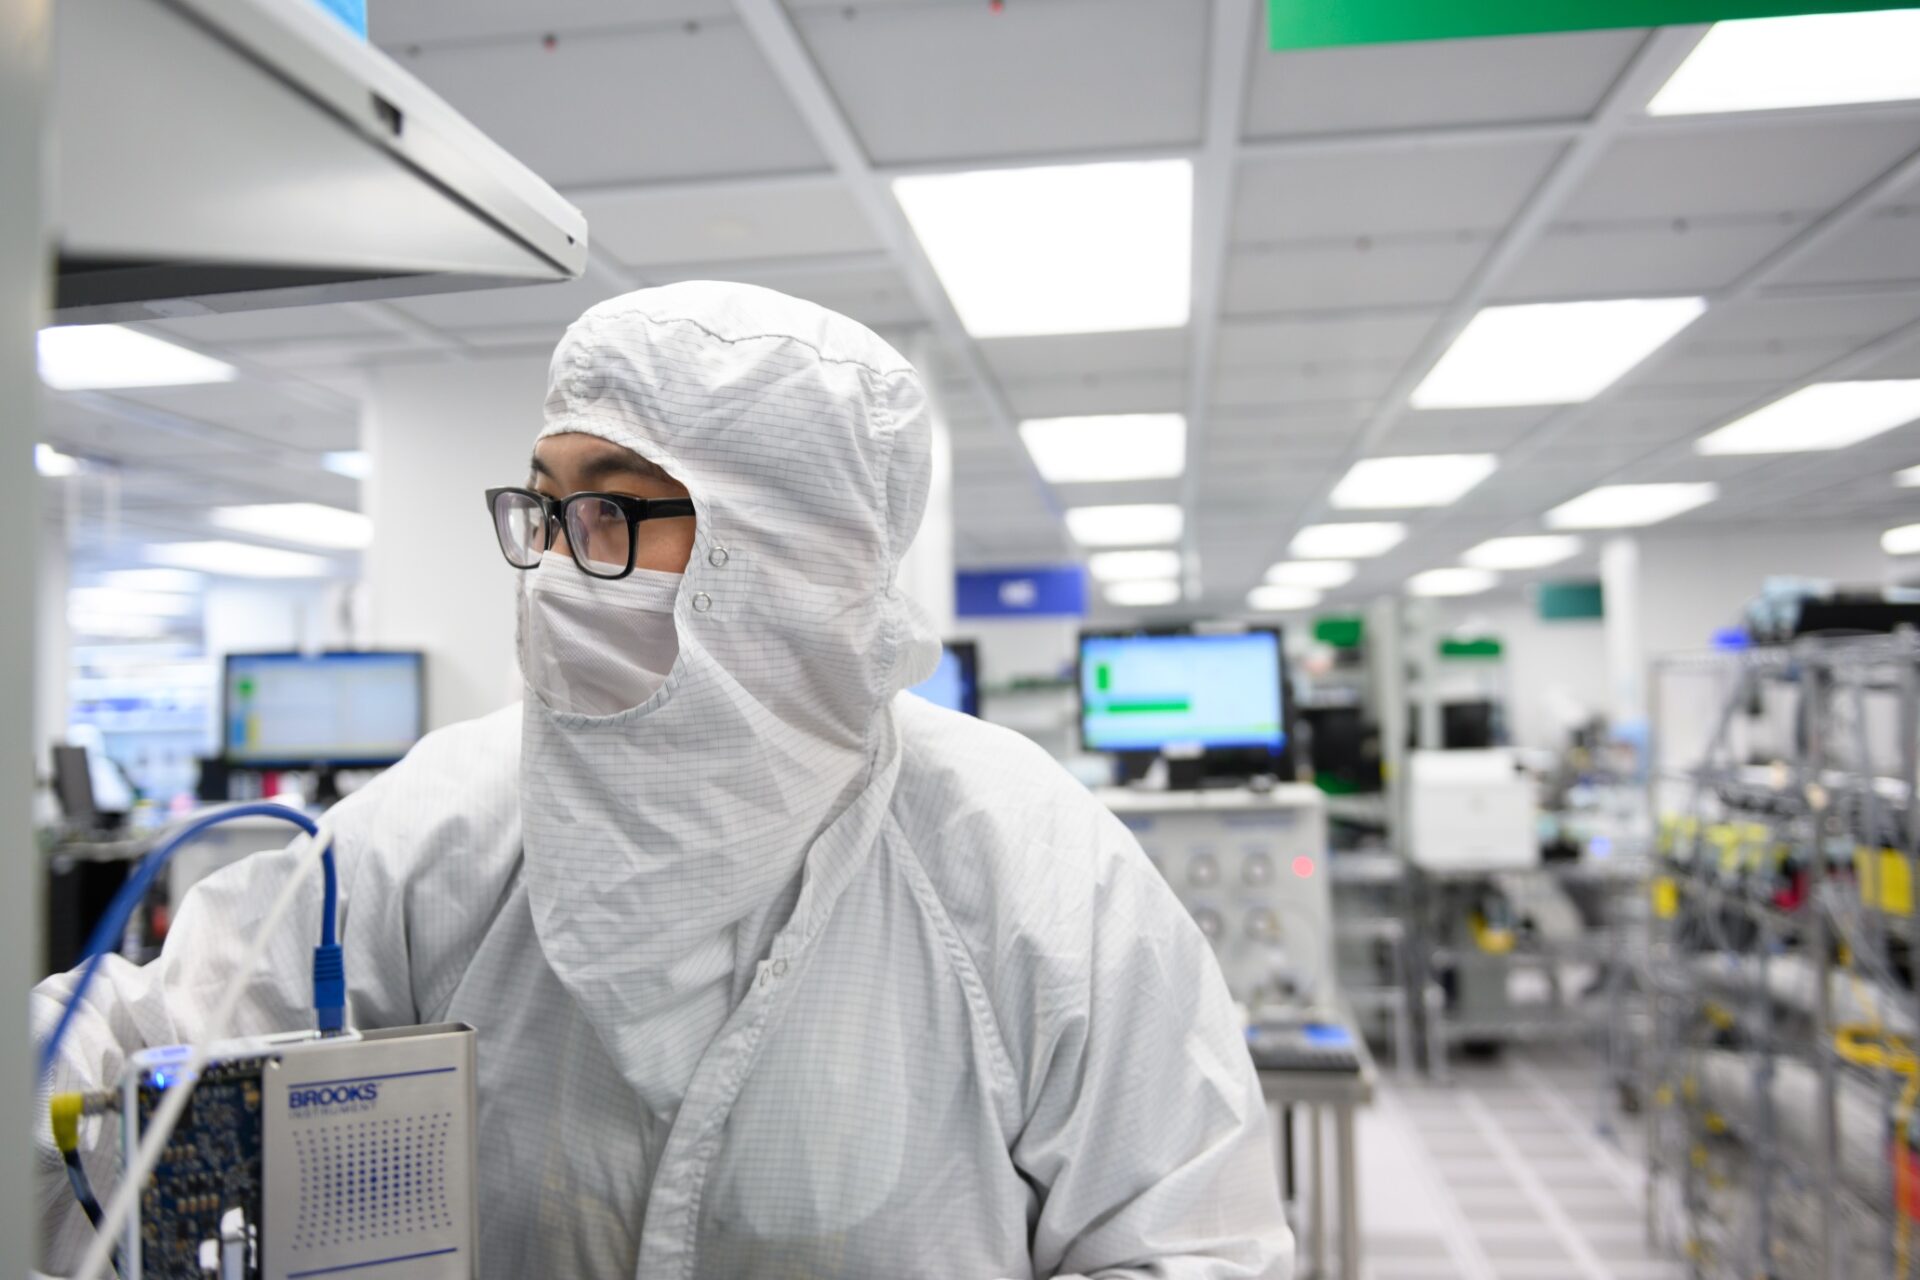 Brooks Instrument Joins Major Biotechnology Consortium Focused on Regenerative Drug Manufacturing